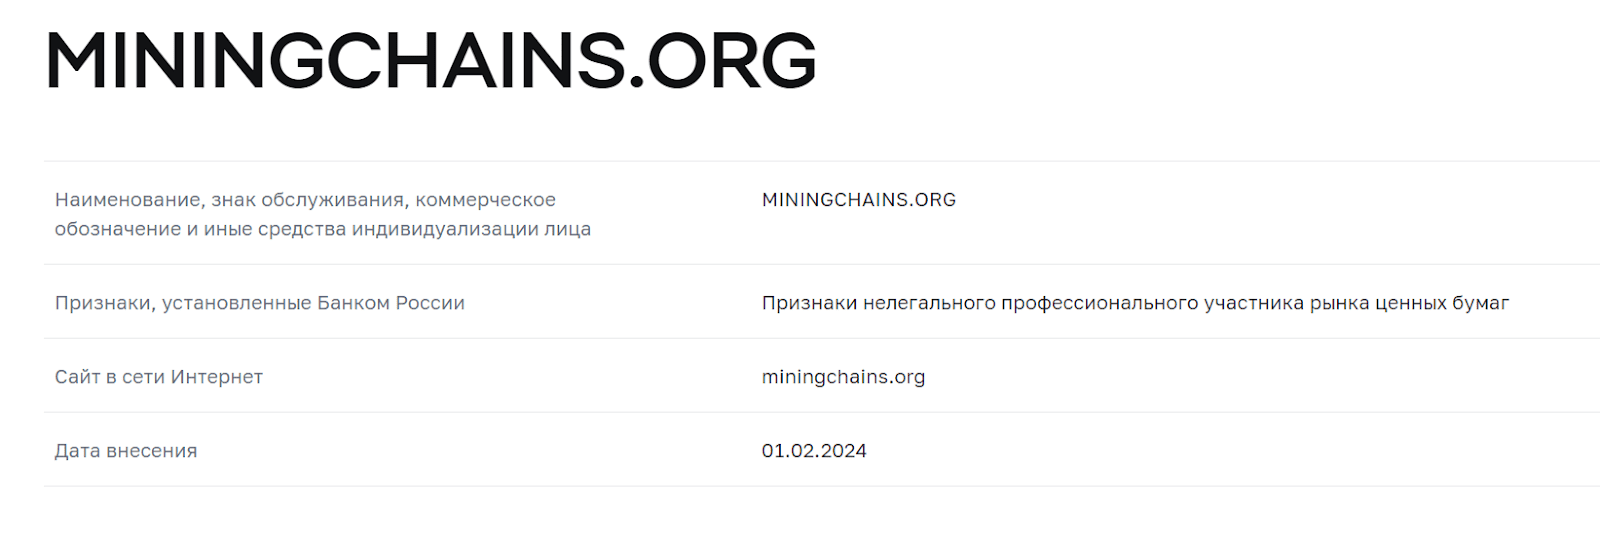 miningchains org отзывы